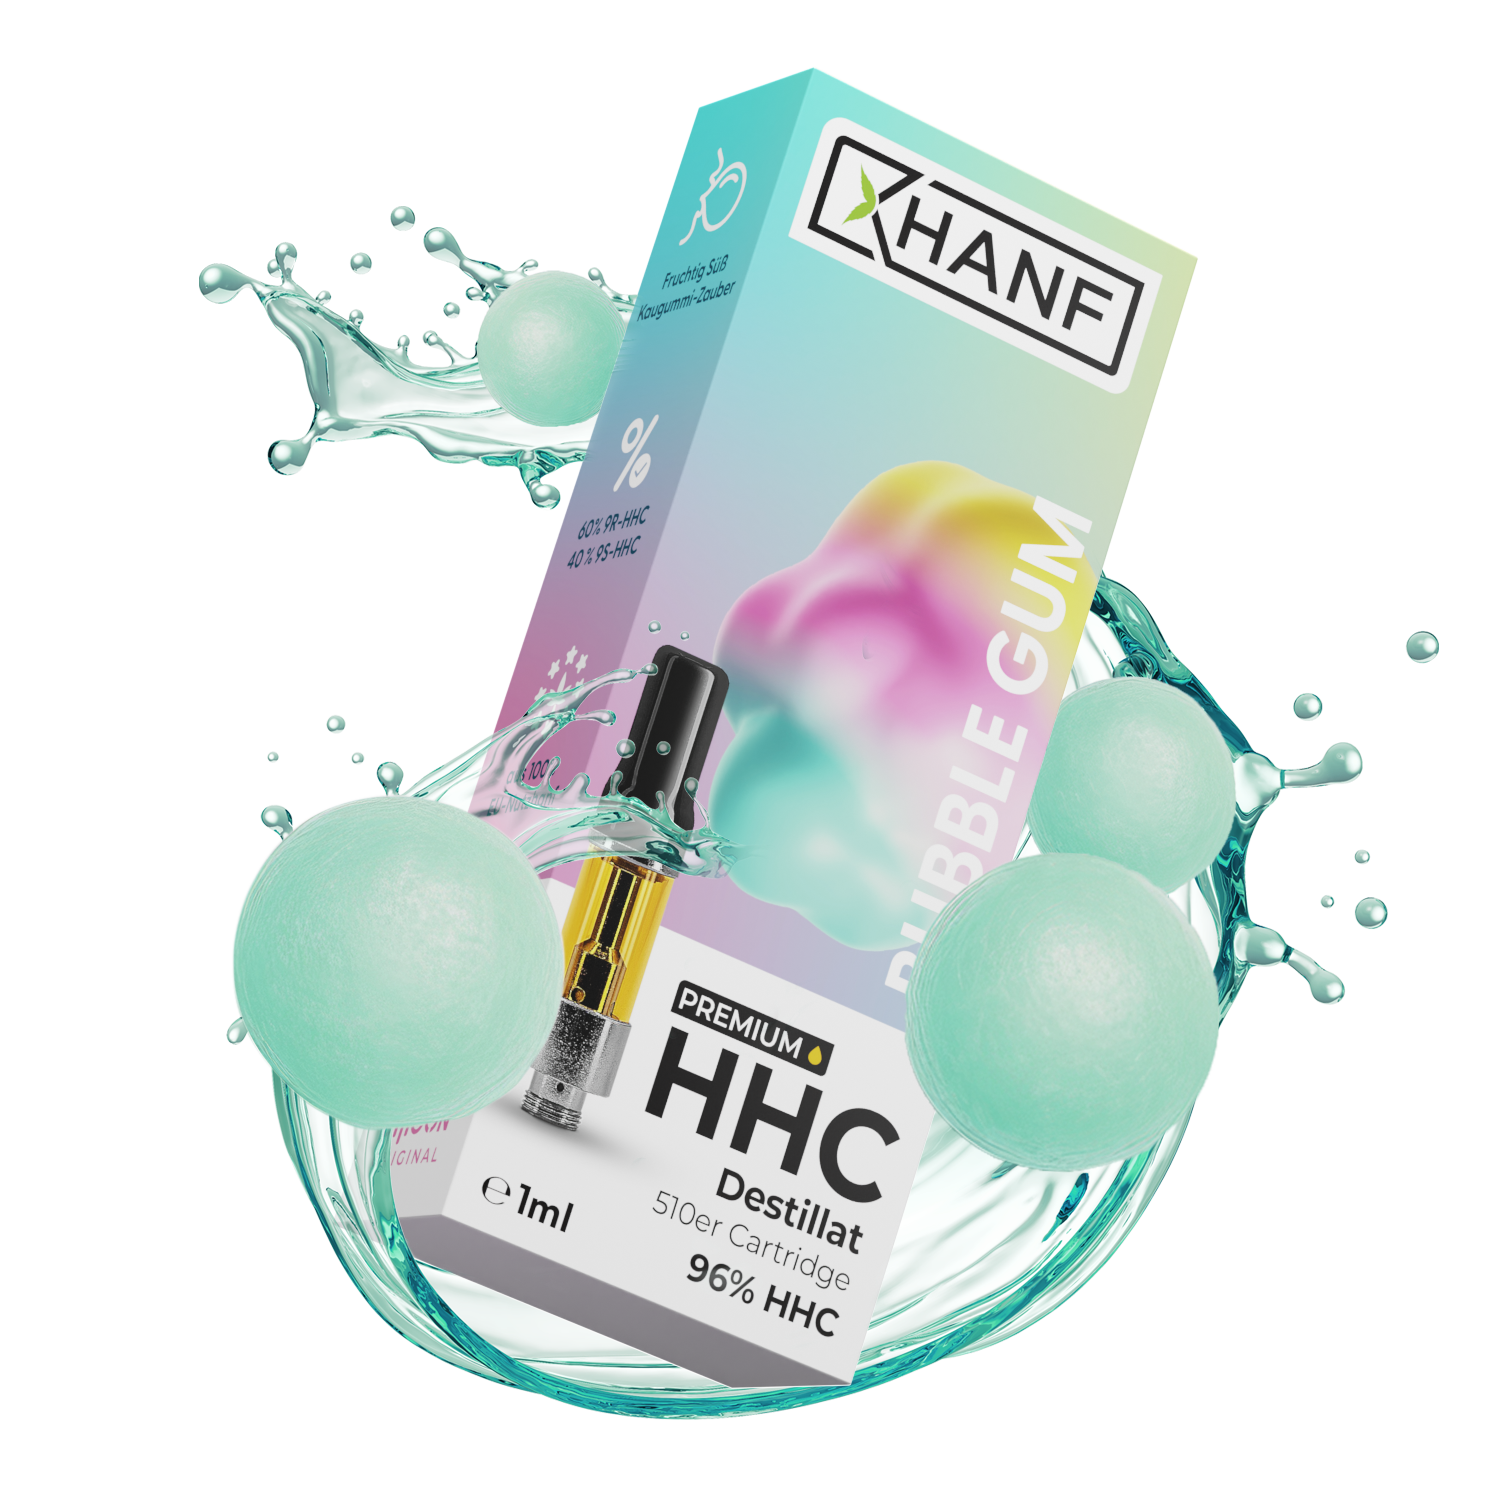 HHC Vape Pen Kartusche - Bubble Gum 1ml